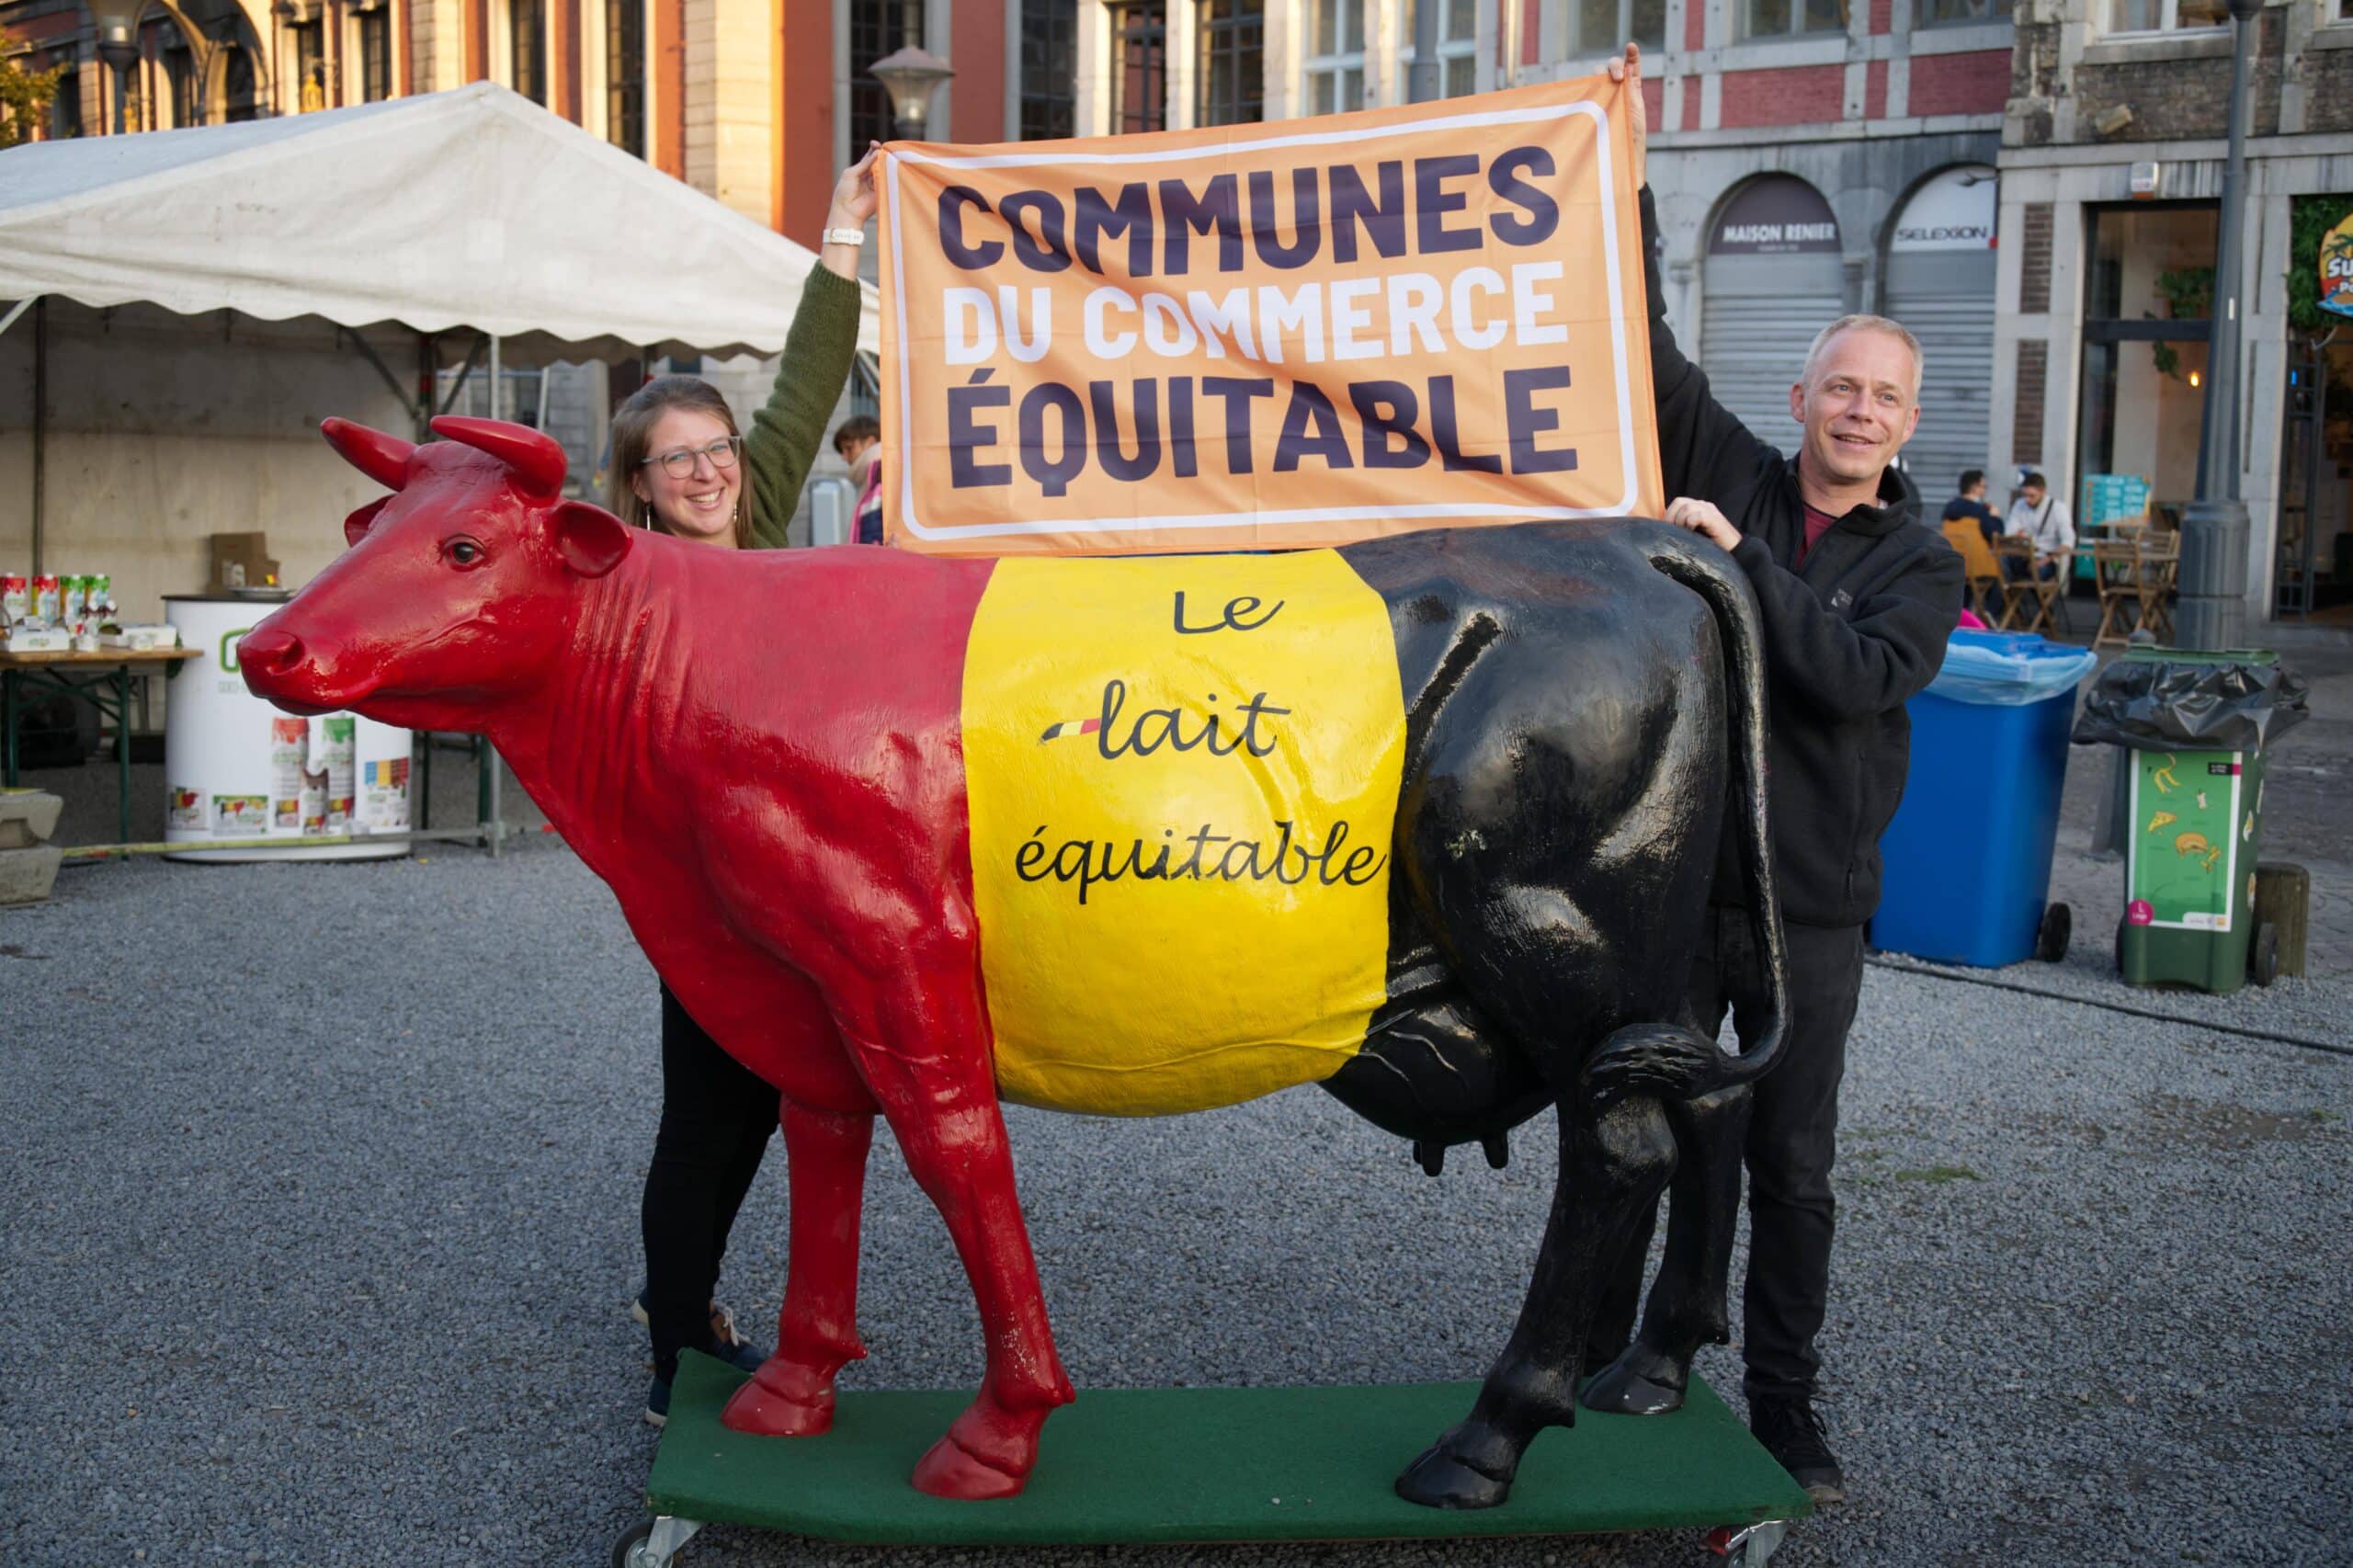 Liège titrée « commune du commerce équitable »